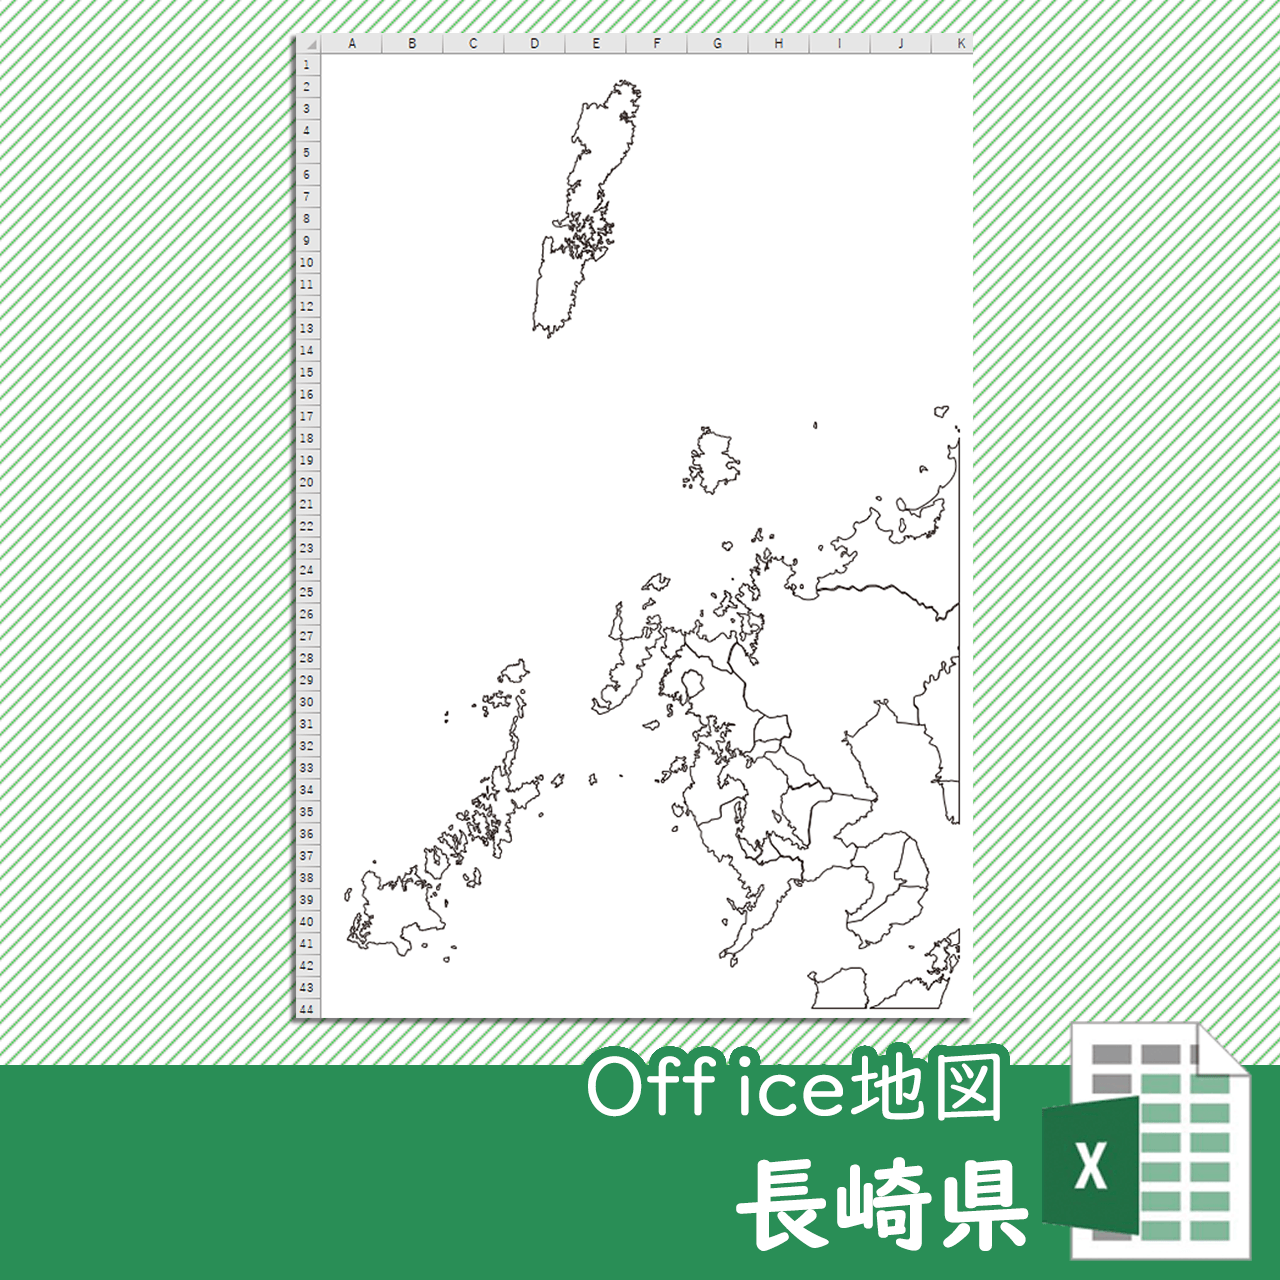 長崎県のOffice地図のサムネイル